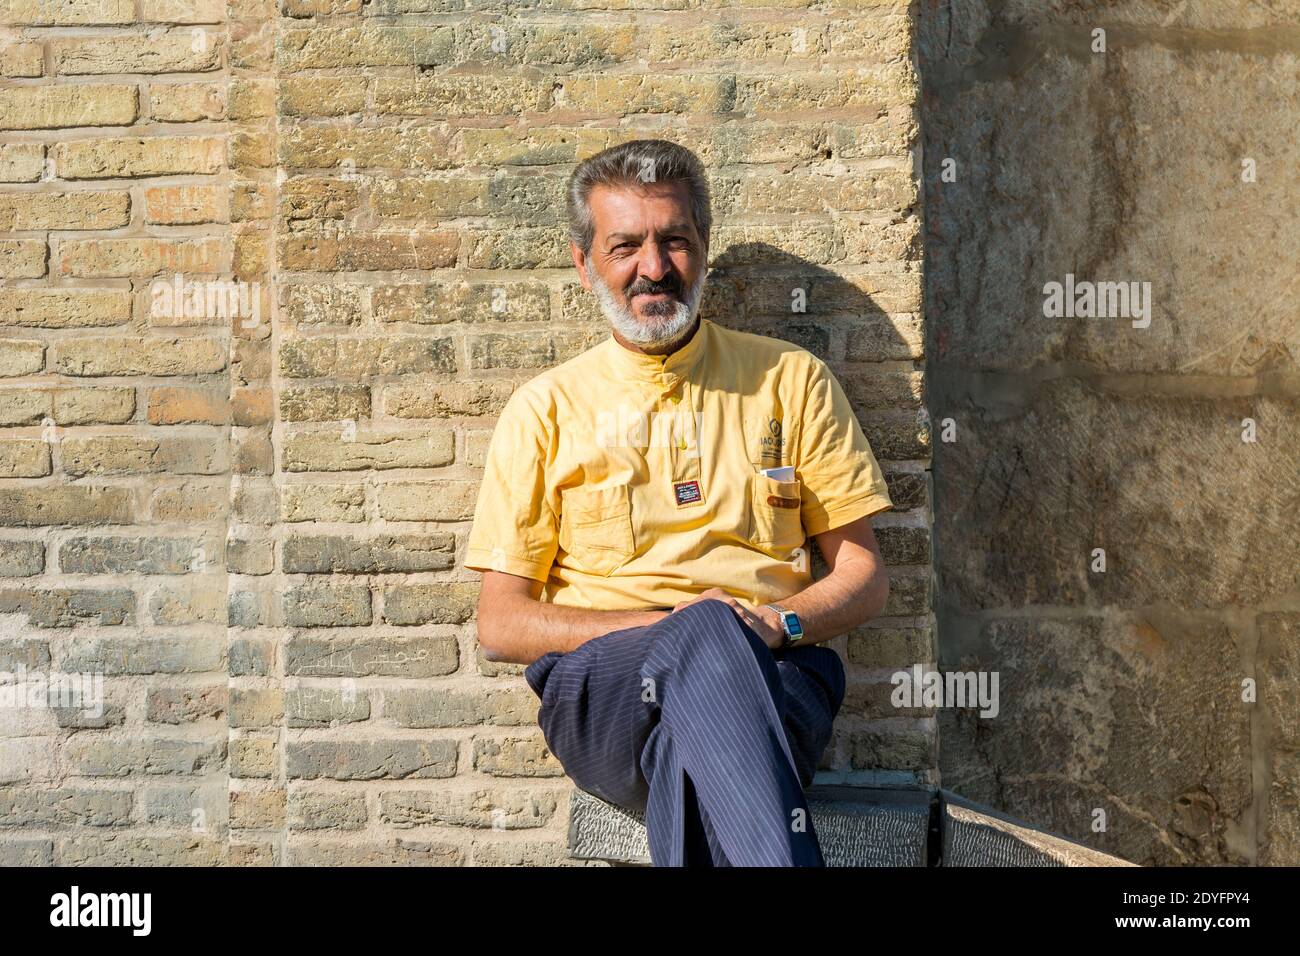 Un iranien assis au pont Allahverdi Khan, également connu sous le nom de si-o-seh Pol ou pont de trente-trois travées, Esfahan, Iran. Banque D'Images